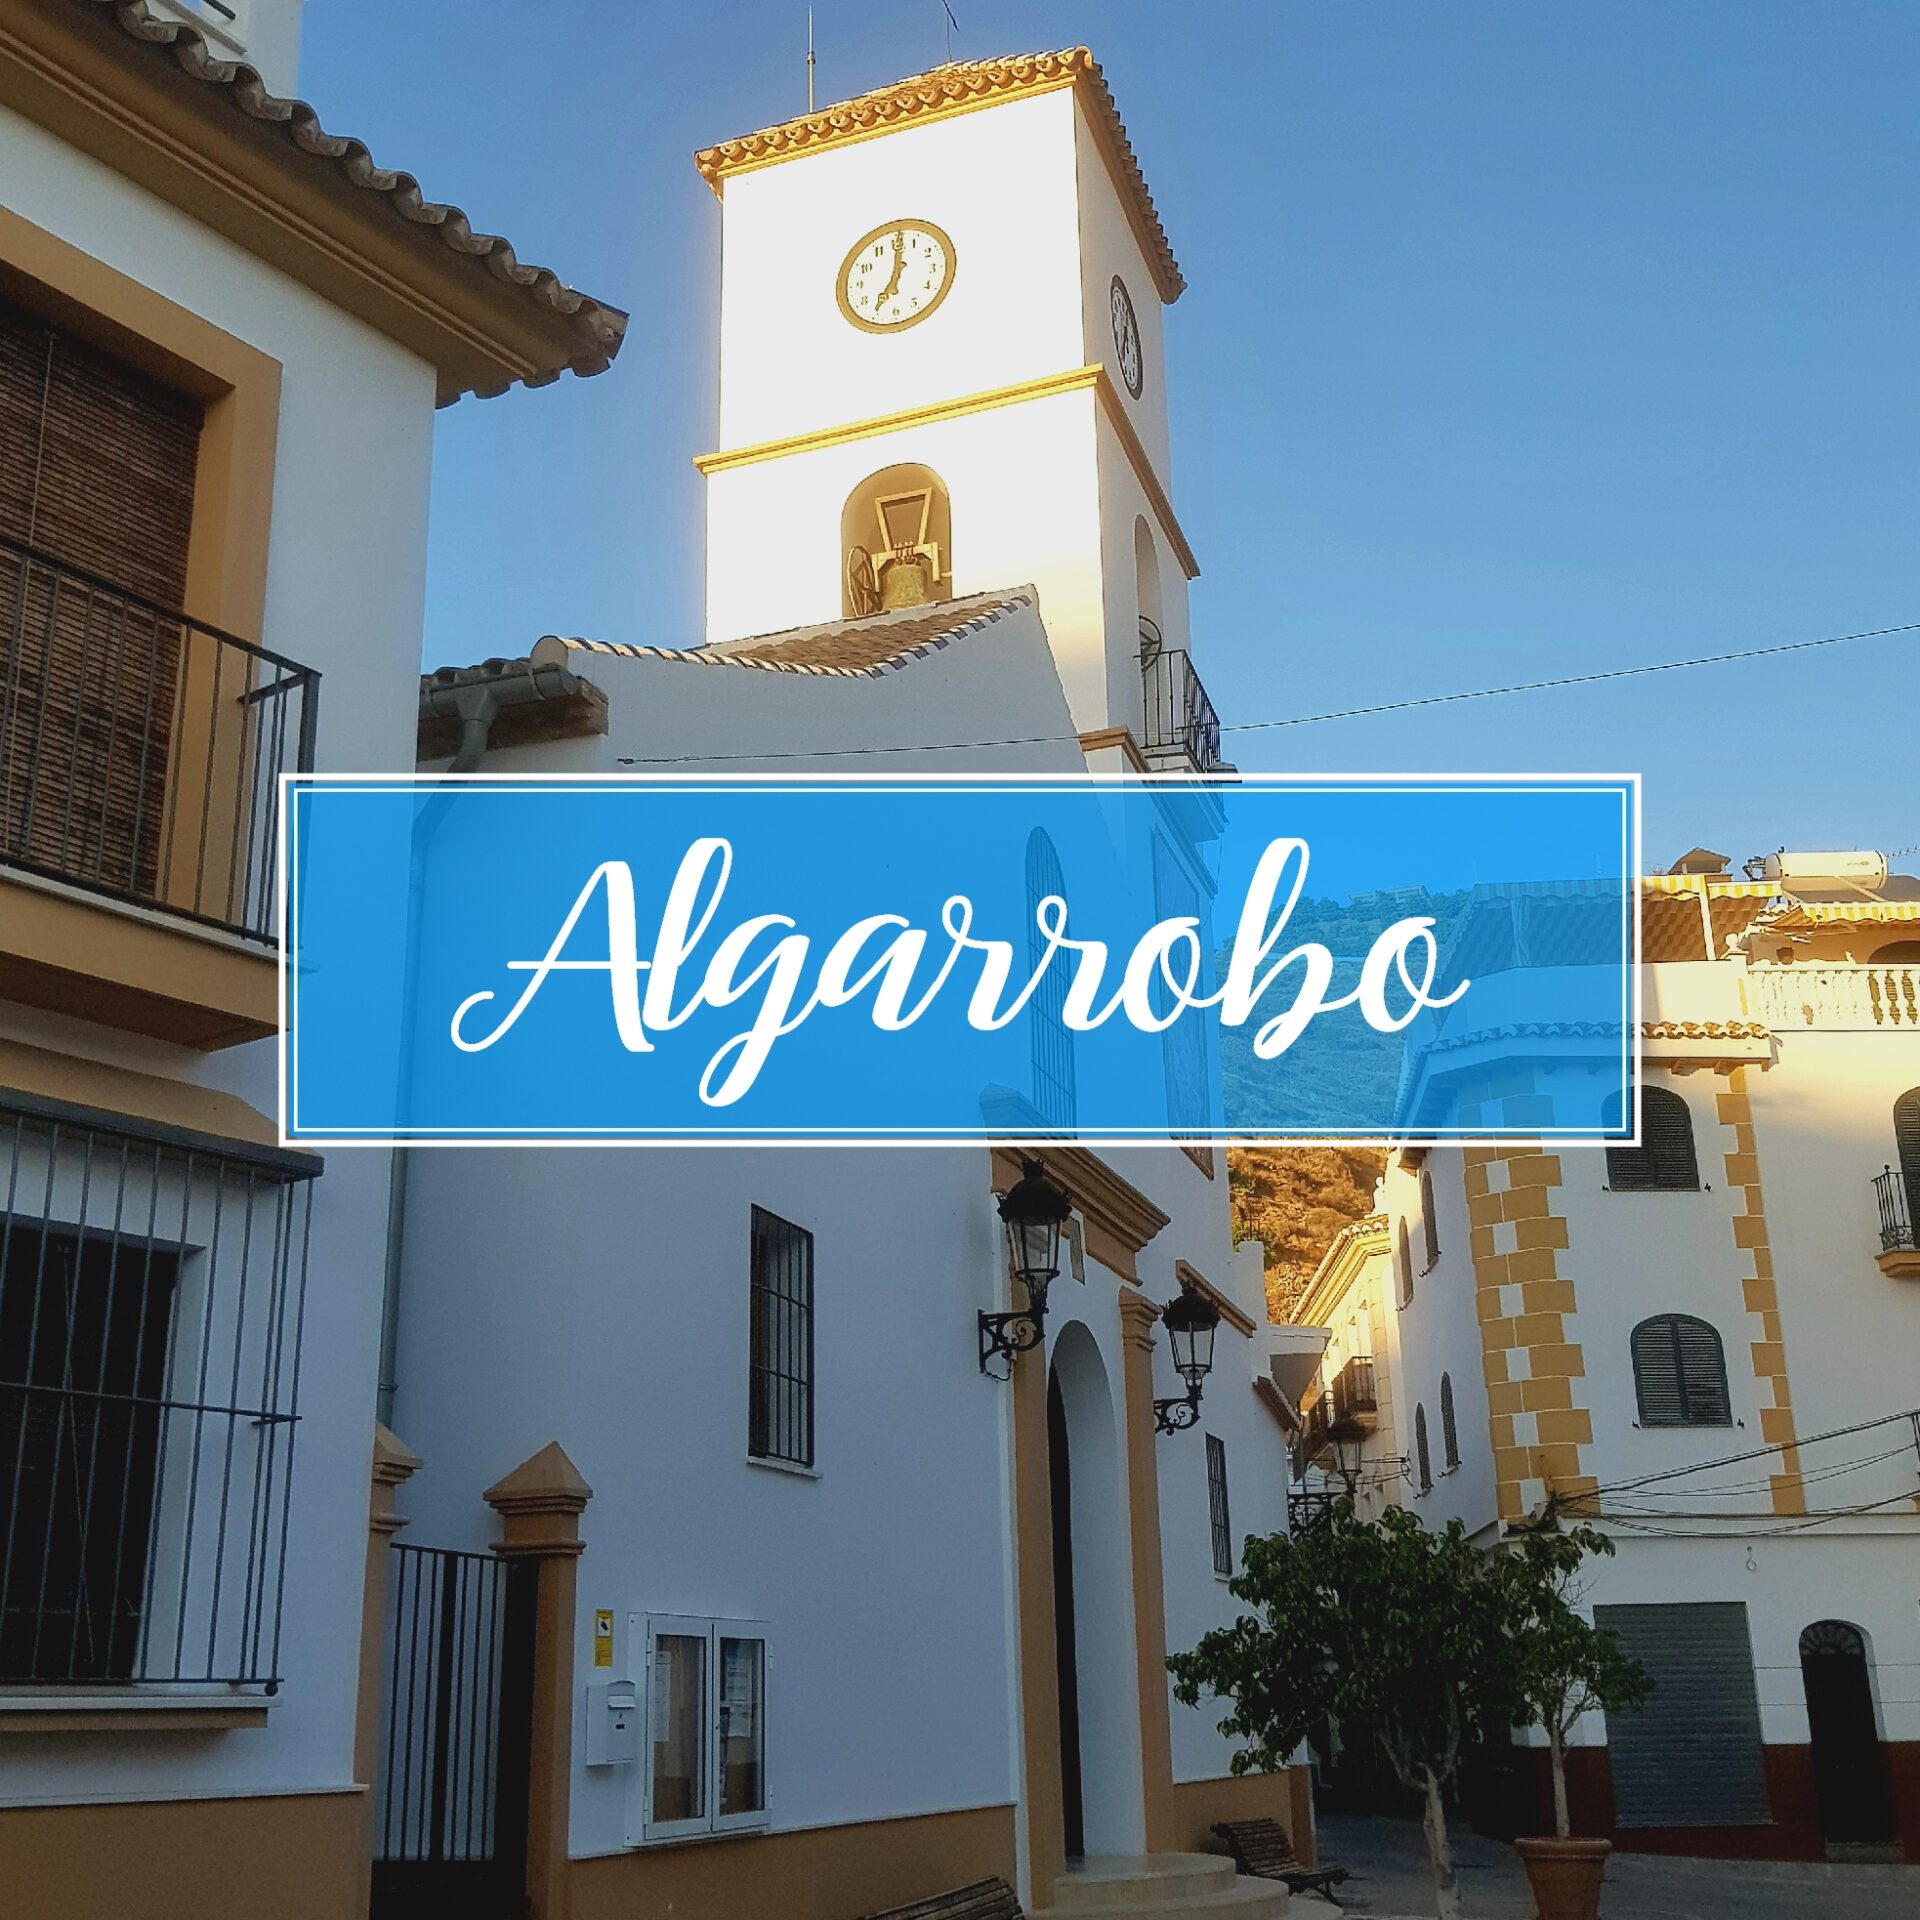 Algarrobo Town Village Malaga